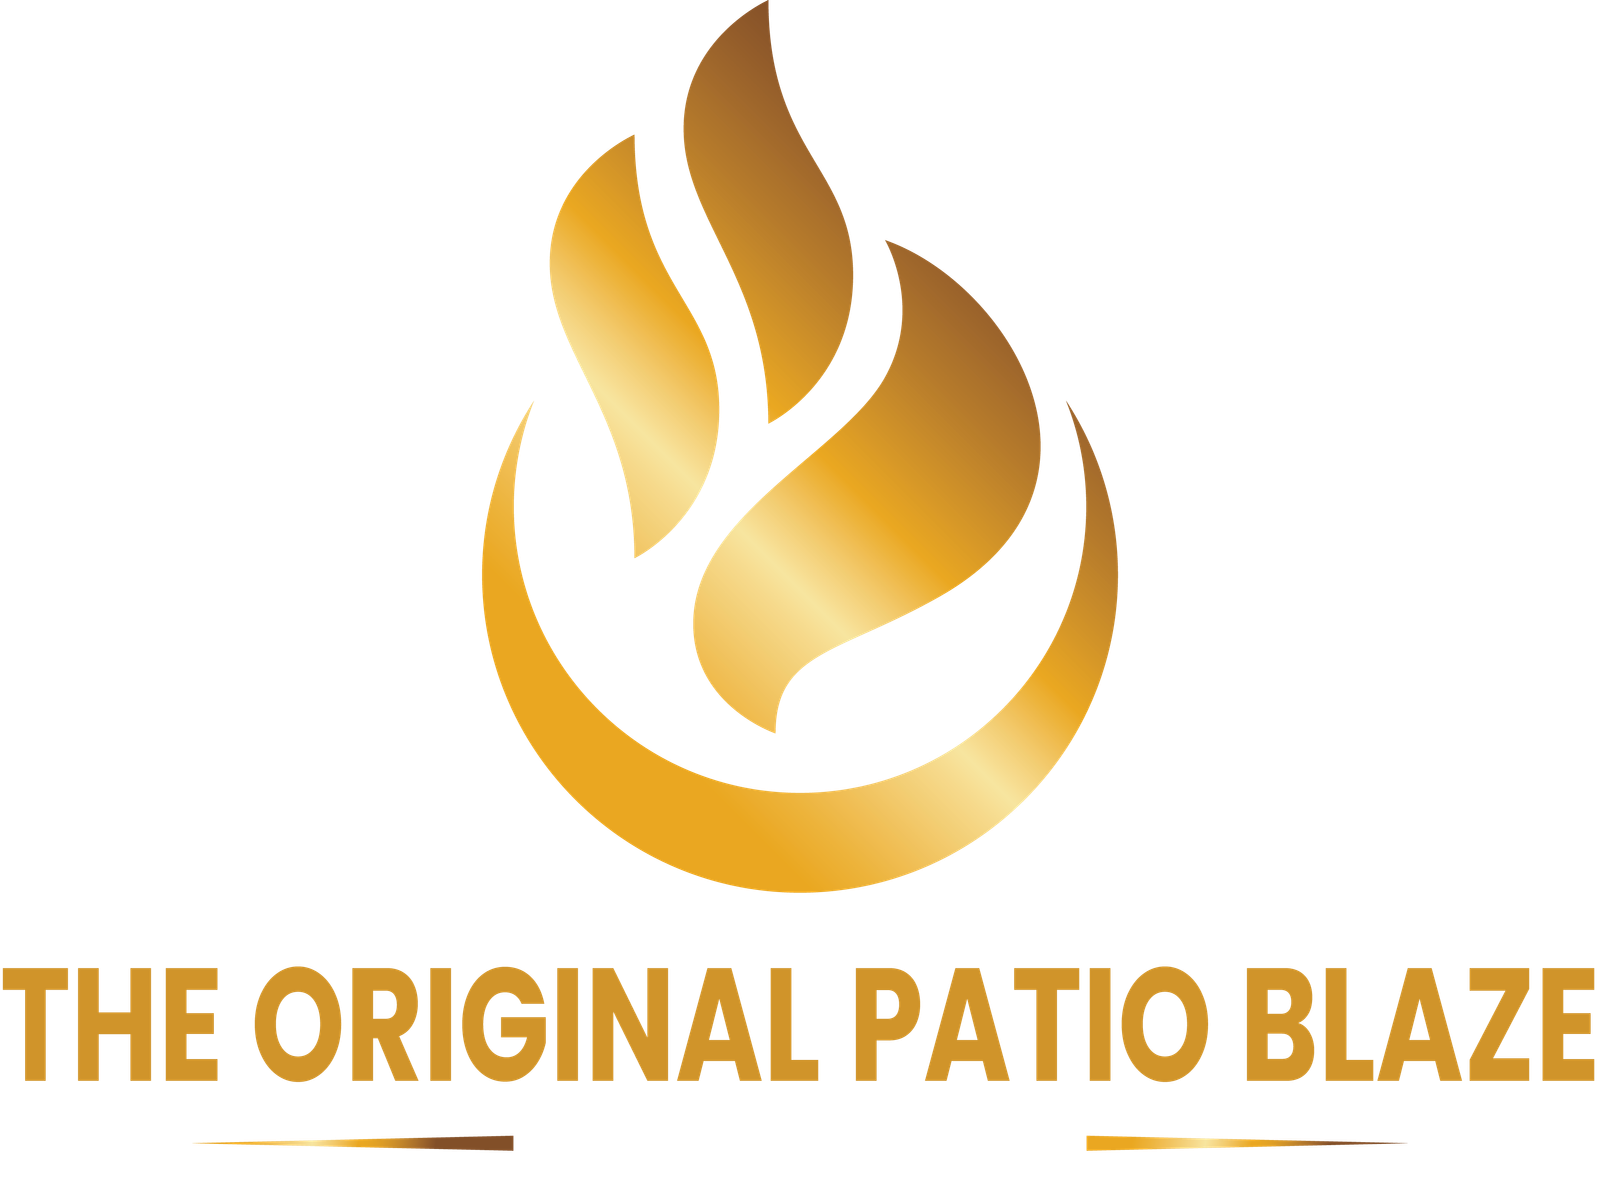 The Original Patio Blaze